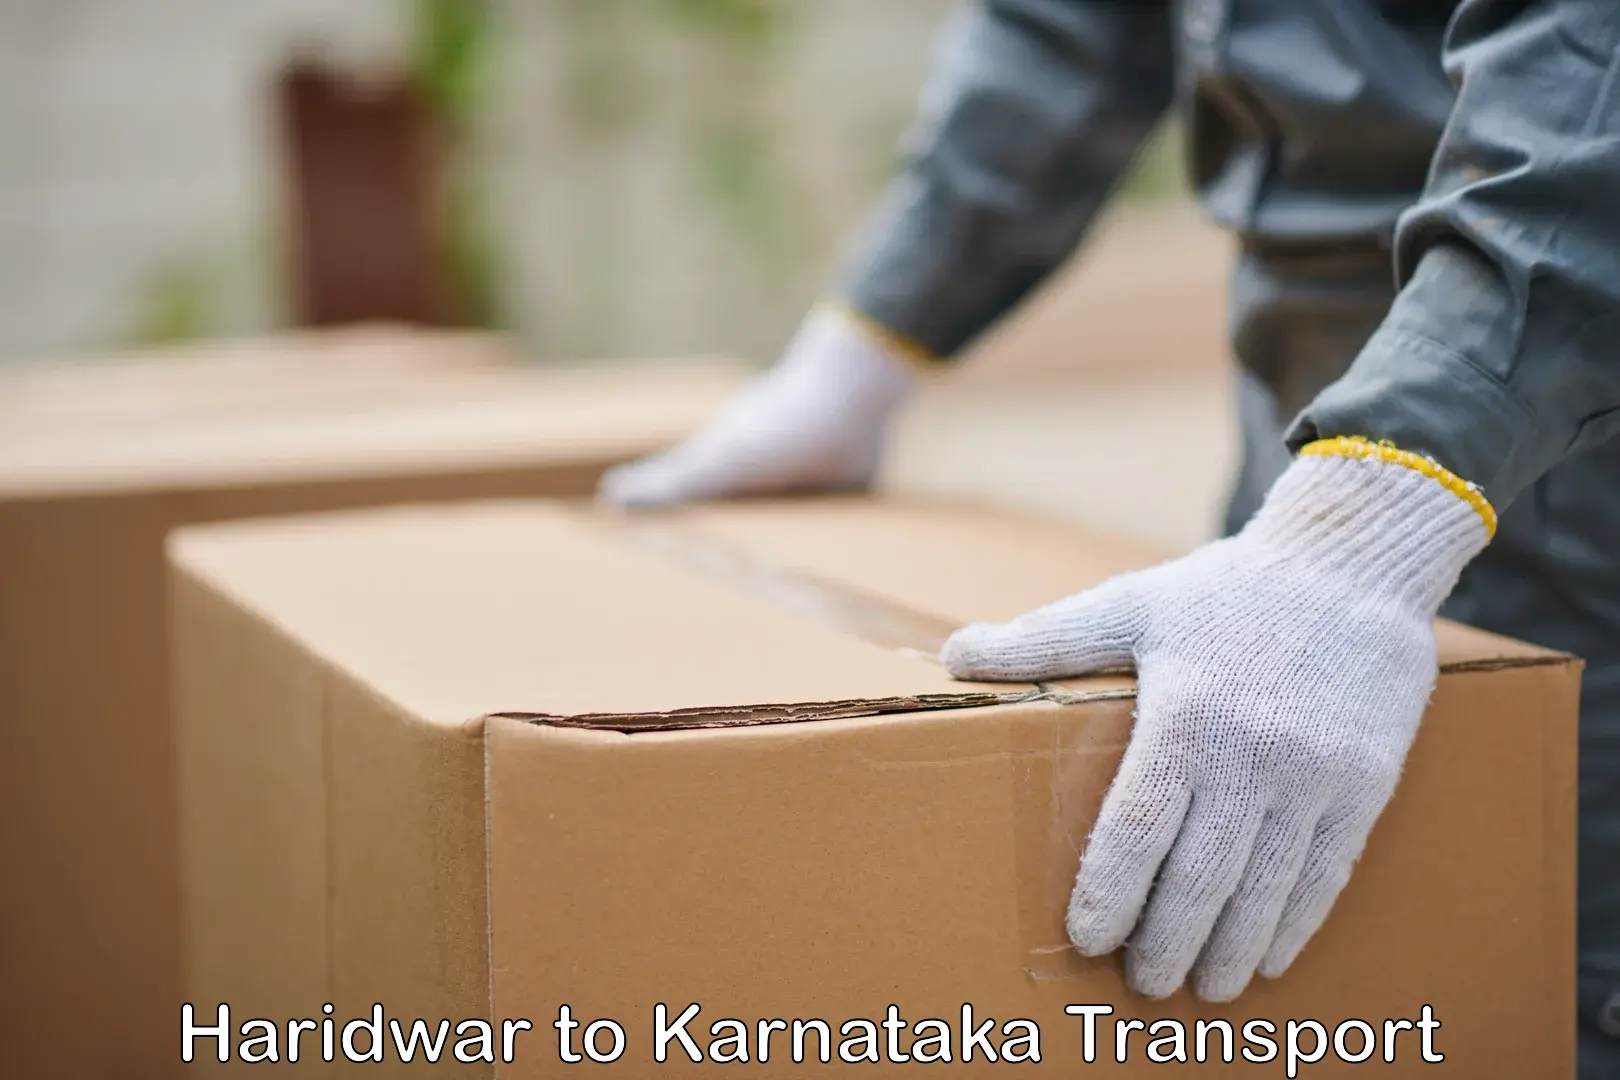 Interstate transport services Haridwar to Kanjarakatte